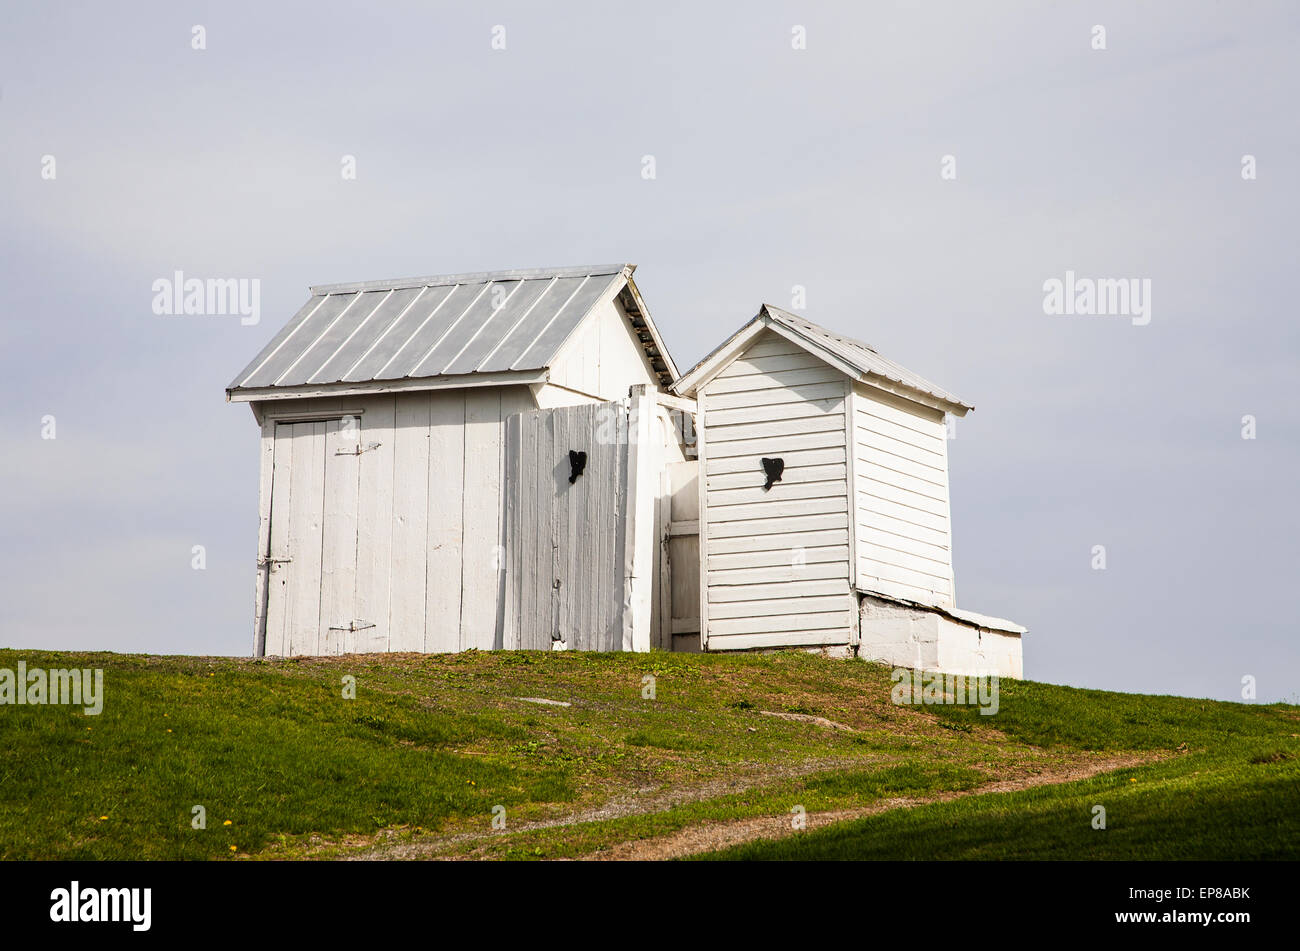 Deux anciens Amish école ses et ses maisons d'hôtes dans une école d'une pièce, comté de Lancaster, PA, USA, US, Amish pays hors de la maison toilettes Banque D'Images